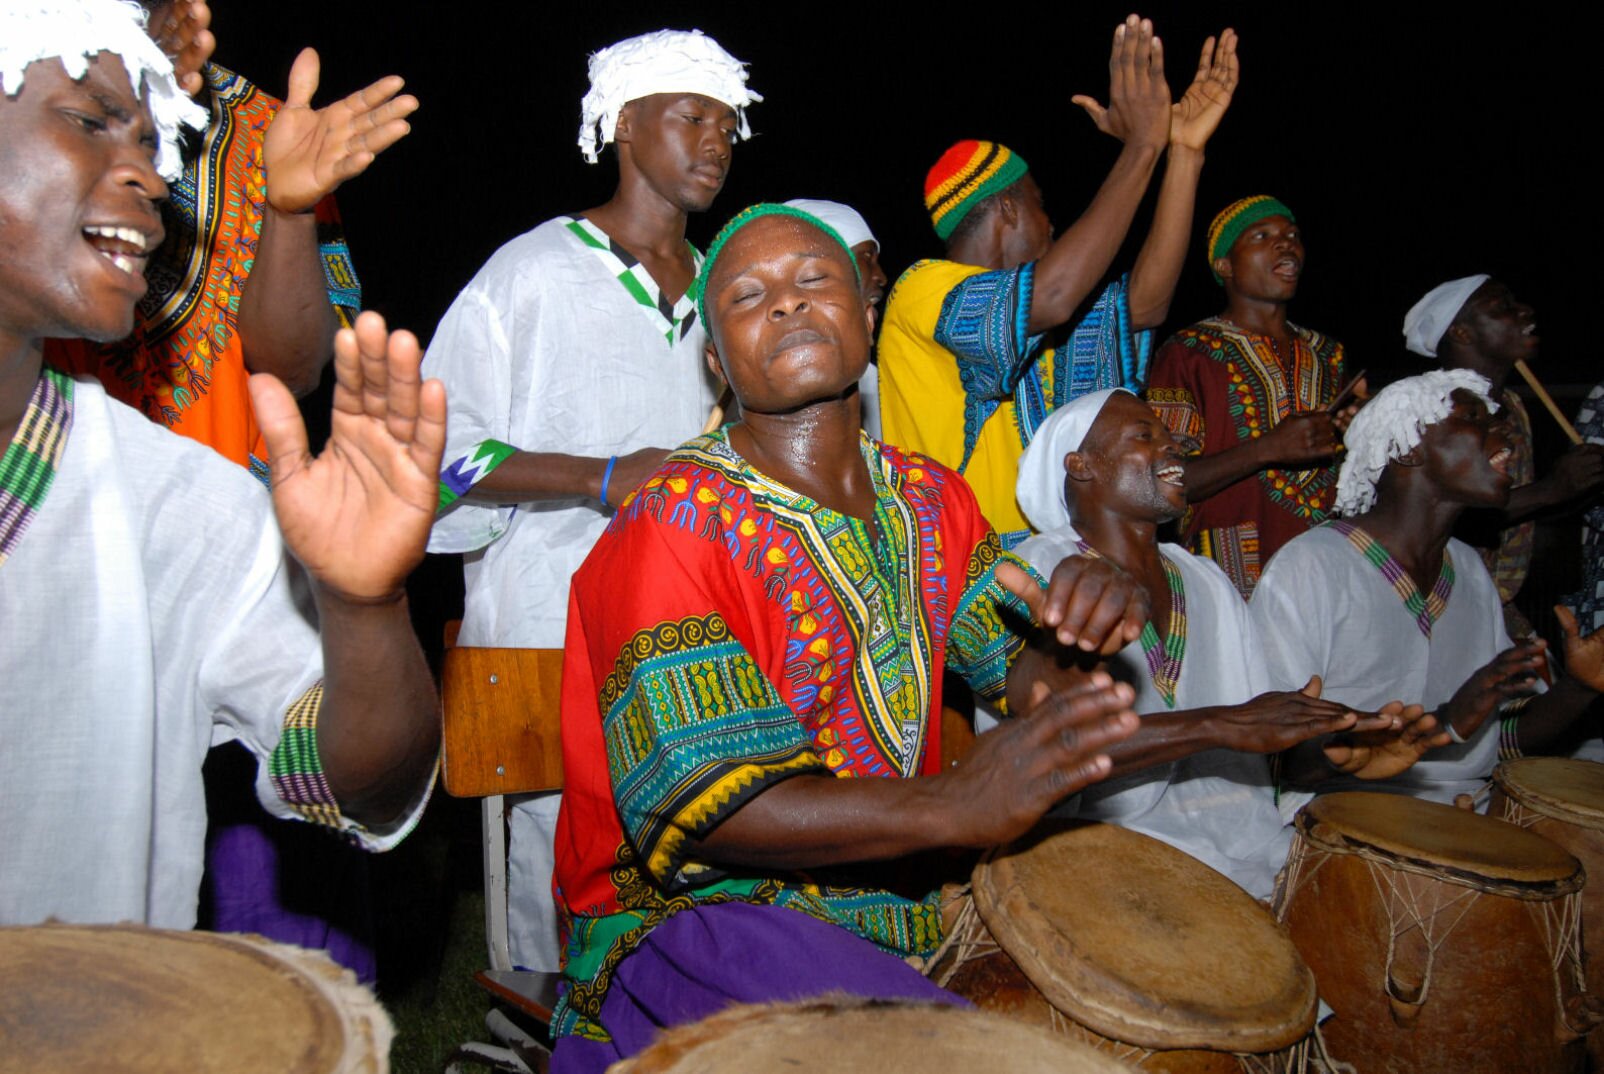 Африканский народ 7 букв. Музыкальная культура Африки. Музыканты африканцы. Музыкальные традиции народов Африки. Африканский барабан.